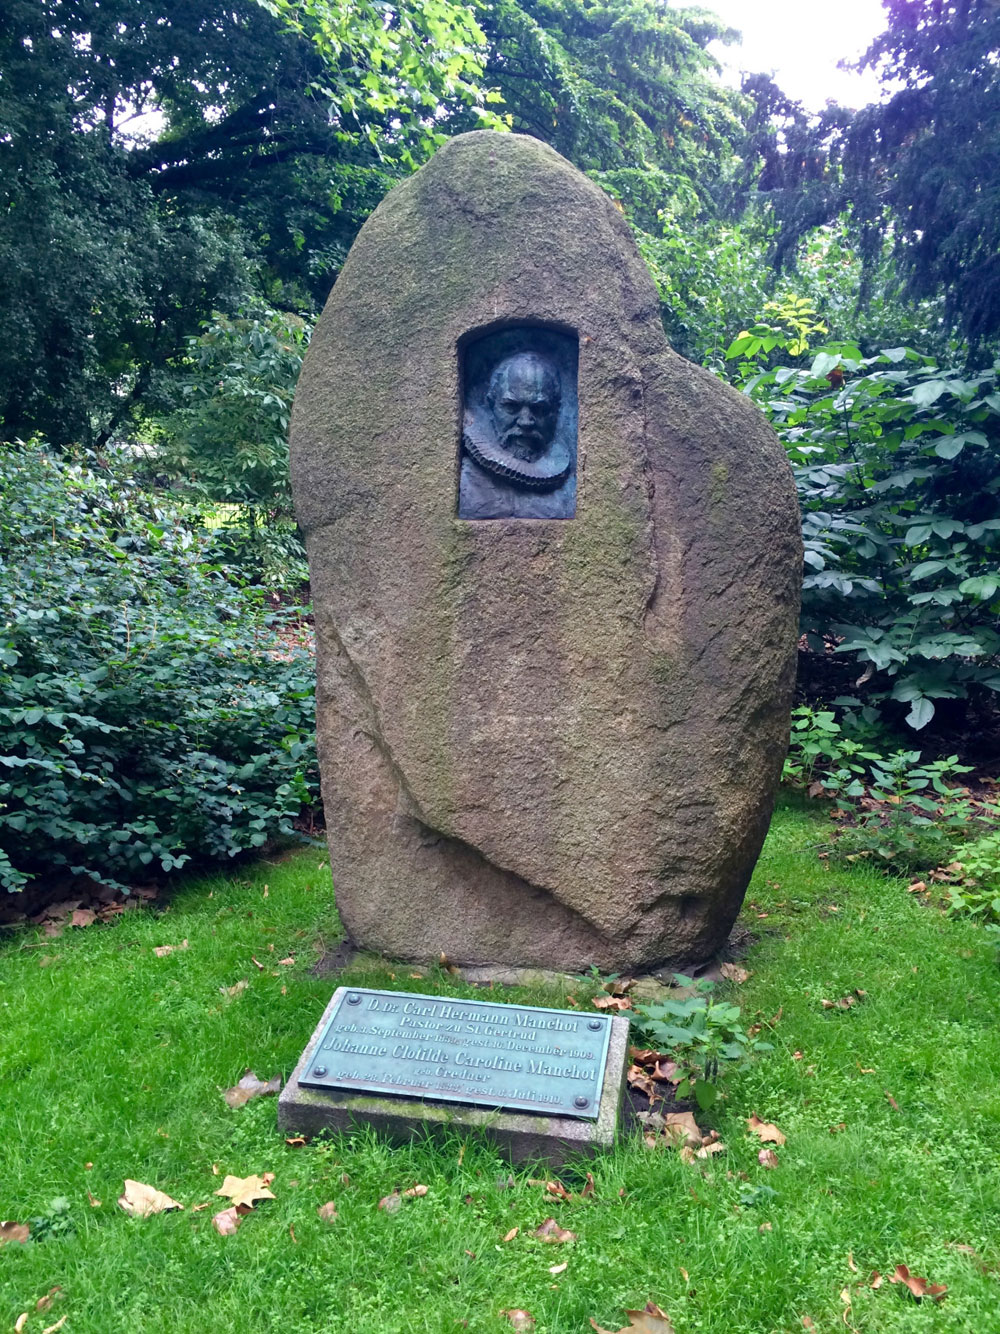 Monument to Carl Hermann Manehut